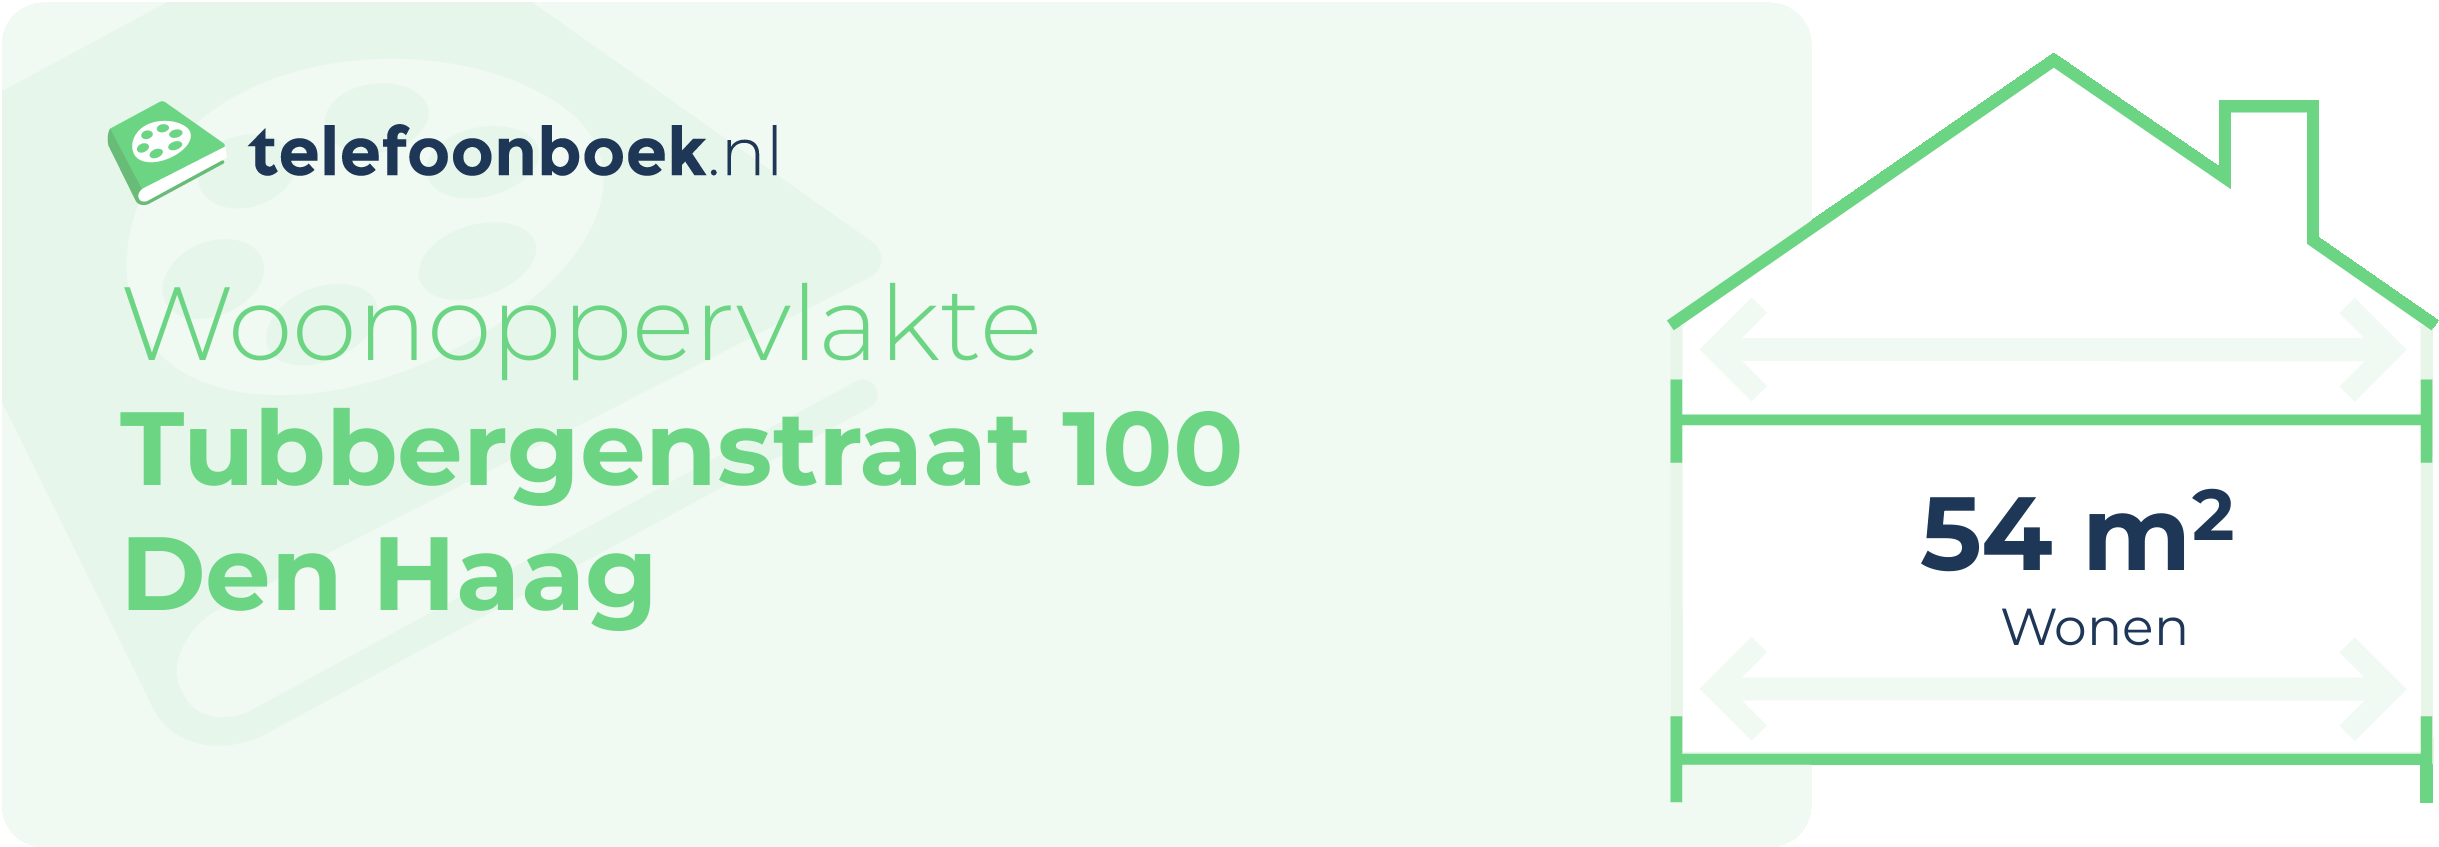 Woonoppervlakte Tubbergenstraat 100 Den Haag